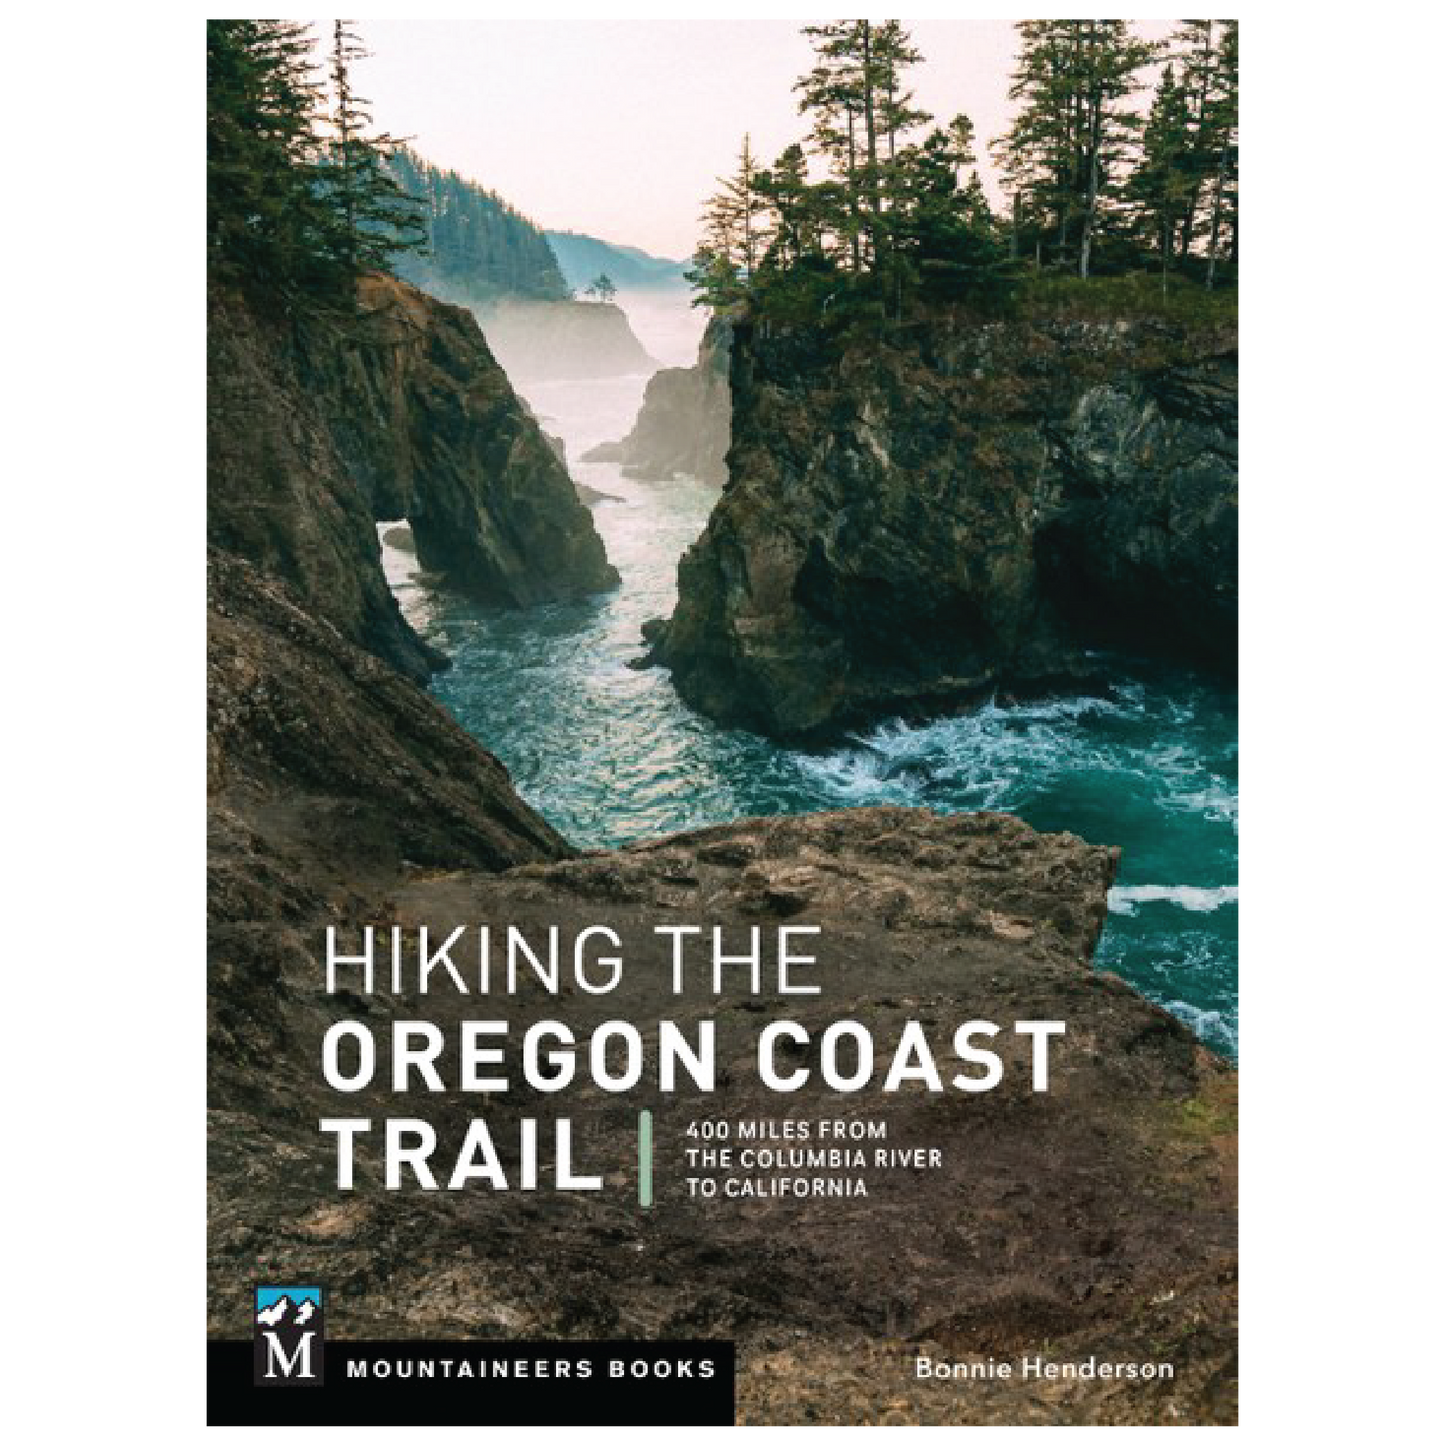 Hiking the Oregon Coast Trail